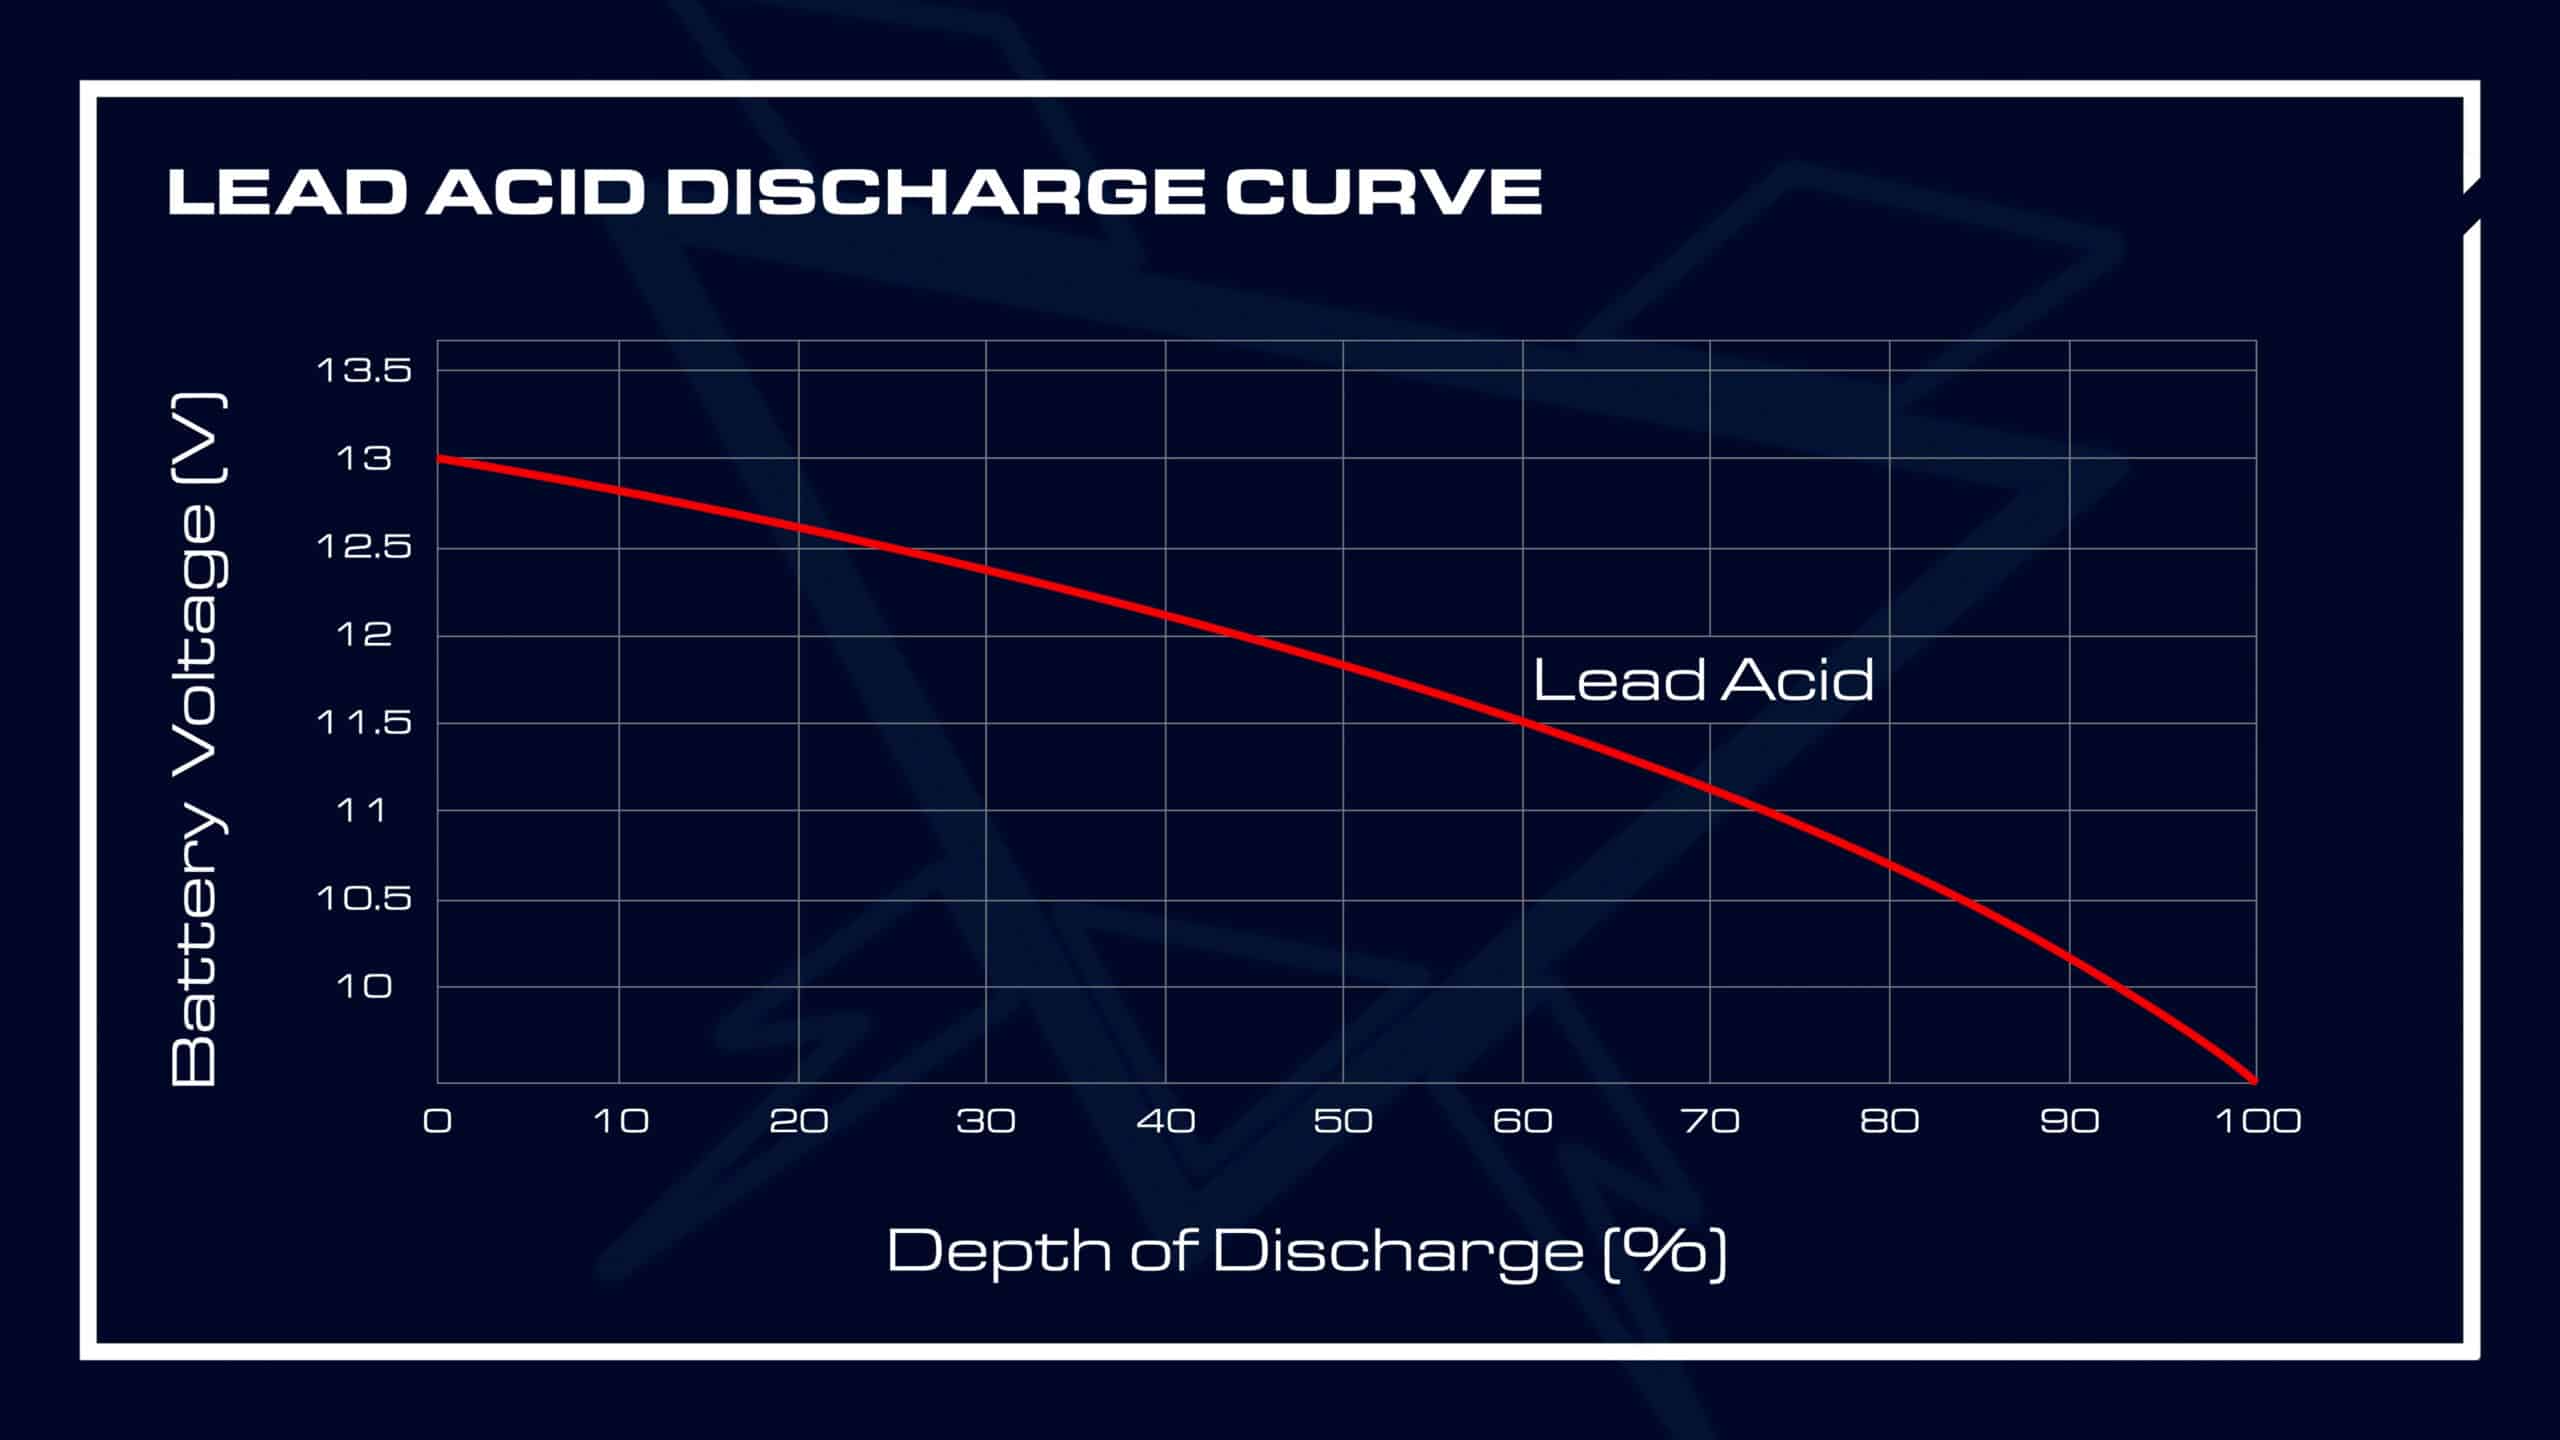 lead acid dishcarge curve